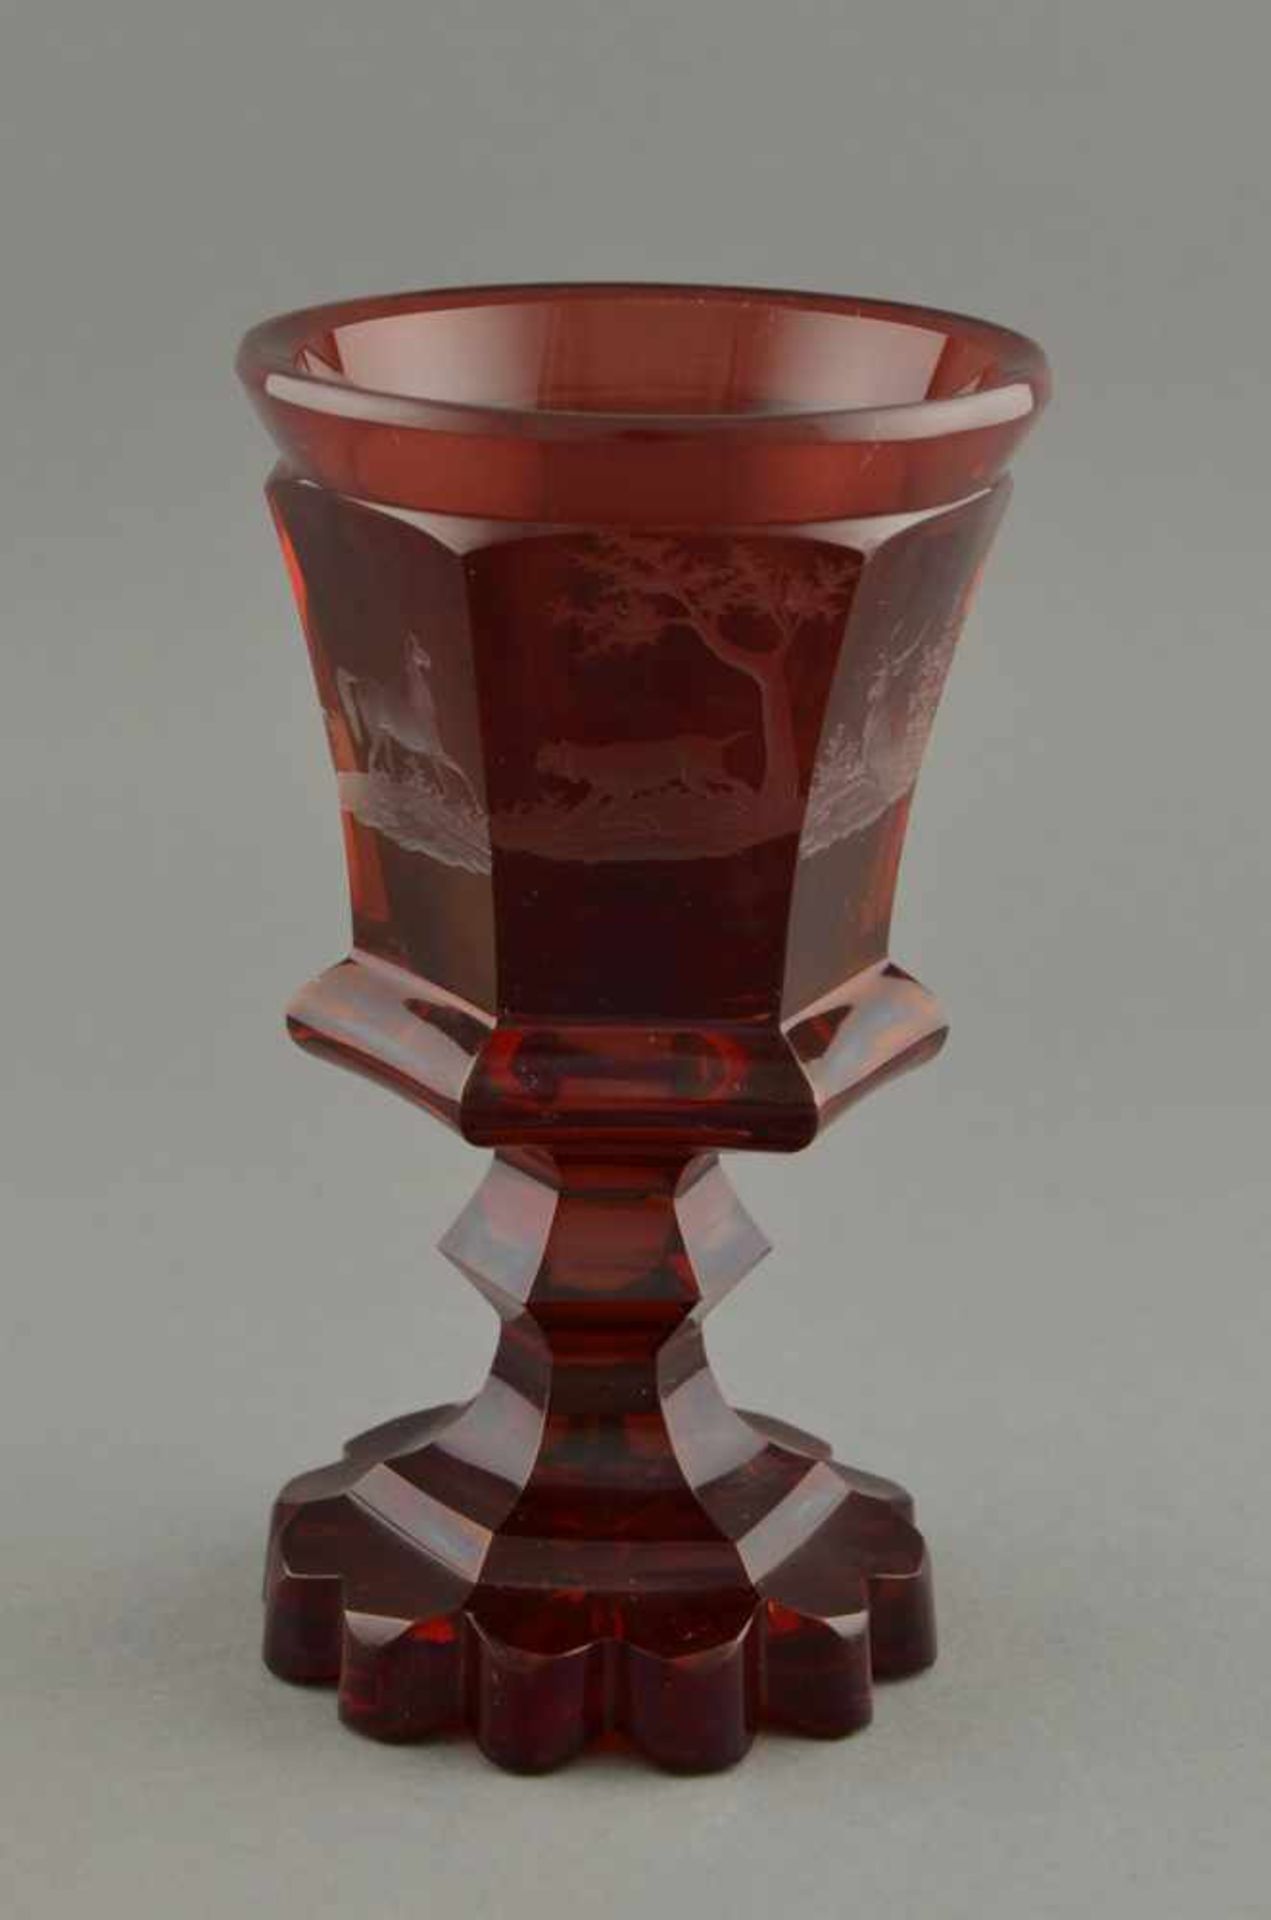 Rubinglas Pokal mit Tiefschliff Dekor "Pferde und Hunde", um 1850, H. 15cm